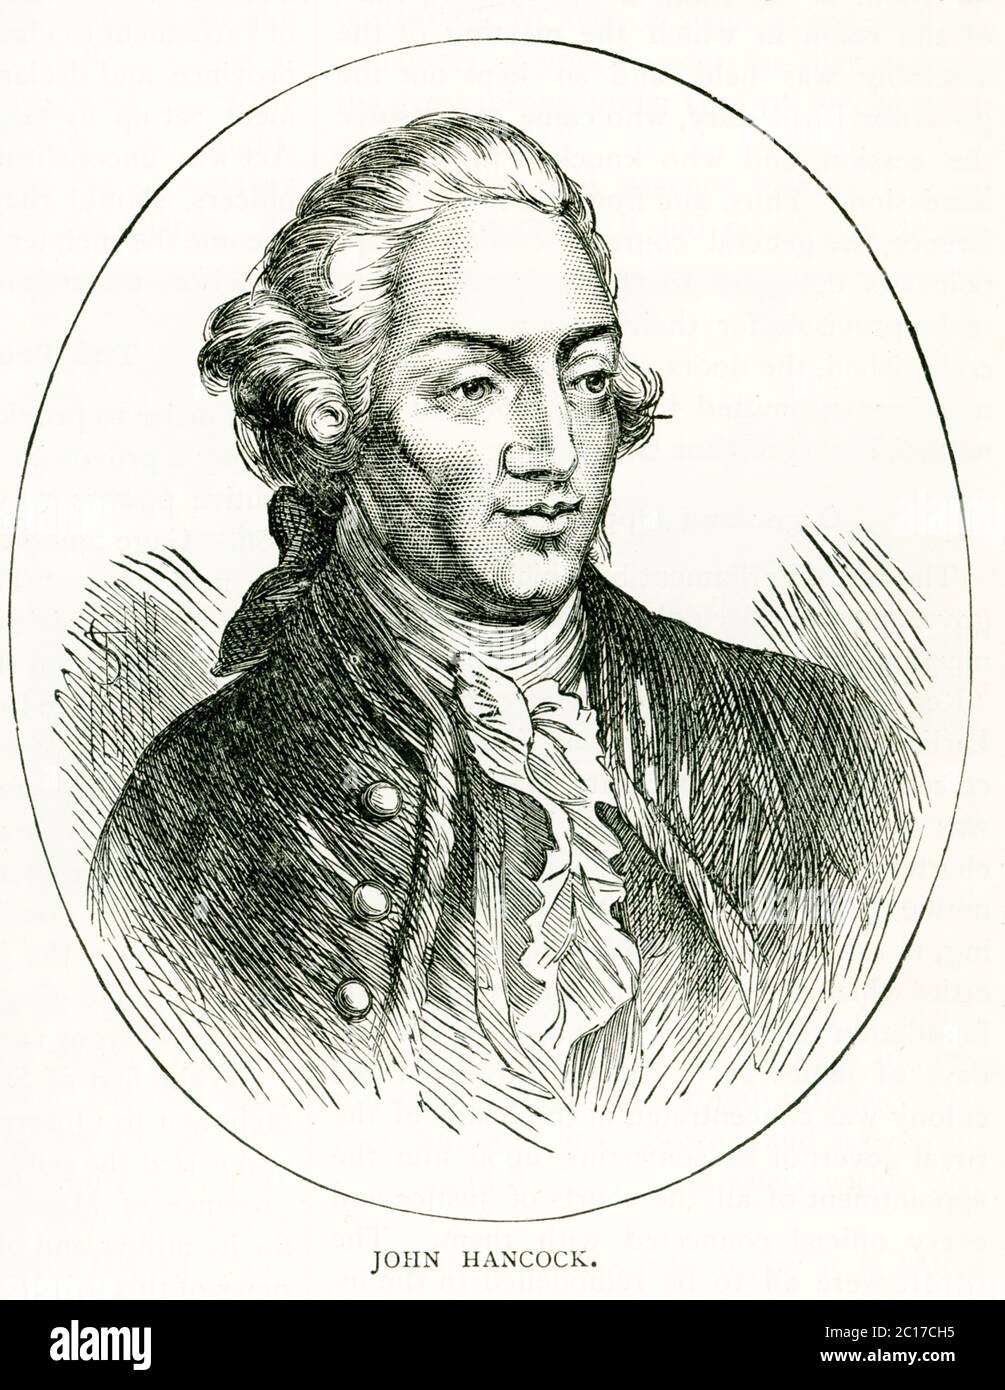 Der amerikanische revolutionäre Patriot John Hancock (1737–1793) war ein Unterzeichner der Unabhängigkeitserklärung. Er förderte den Widerstand gegen die britische Herrschaft und diente von 1775 bis 1777 als Präsident des Kontinentalkongresses. Stockfoto